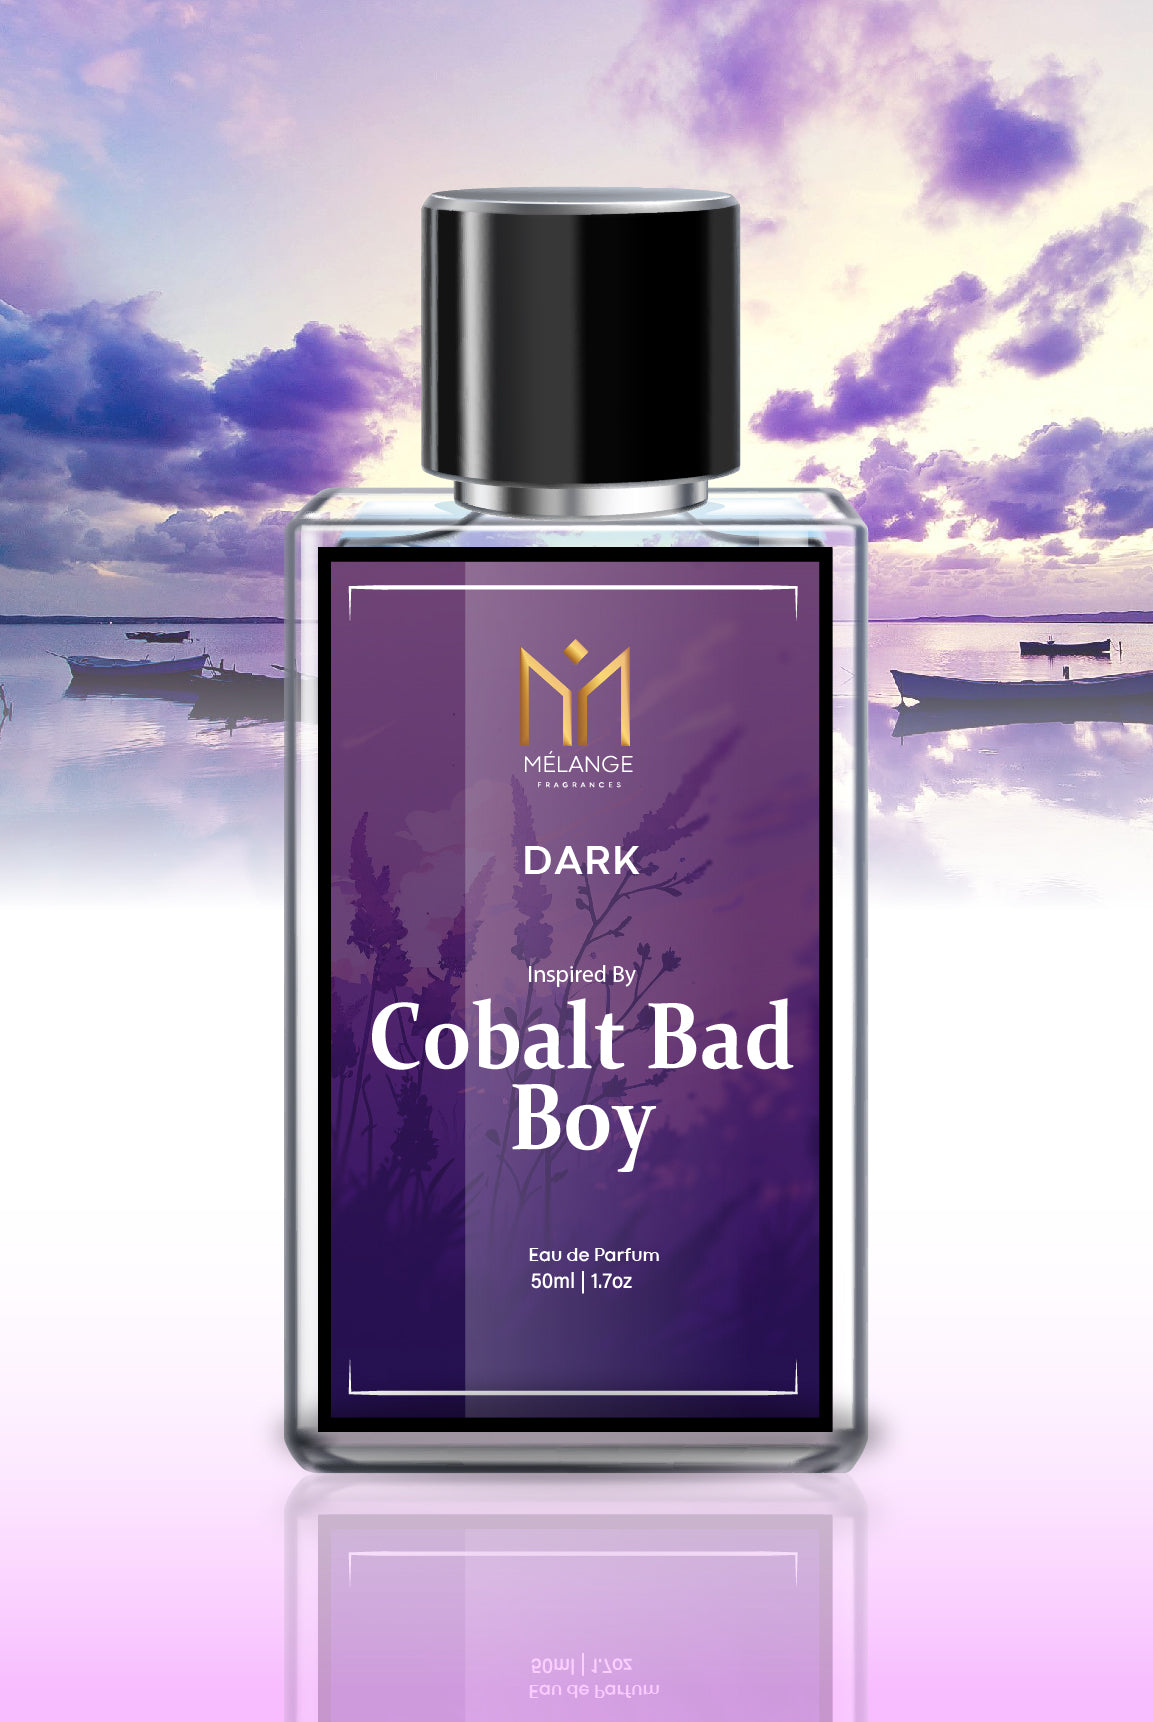 DARK- Inspired By Cobalt Bad Boy